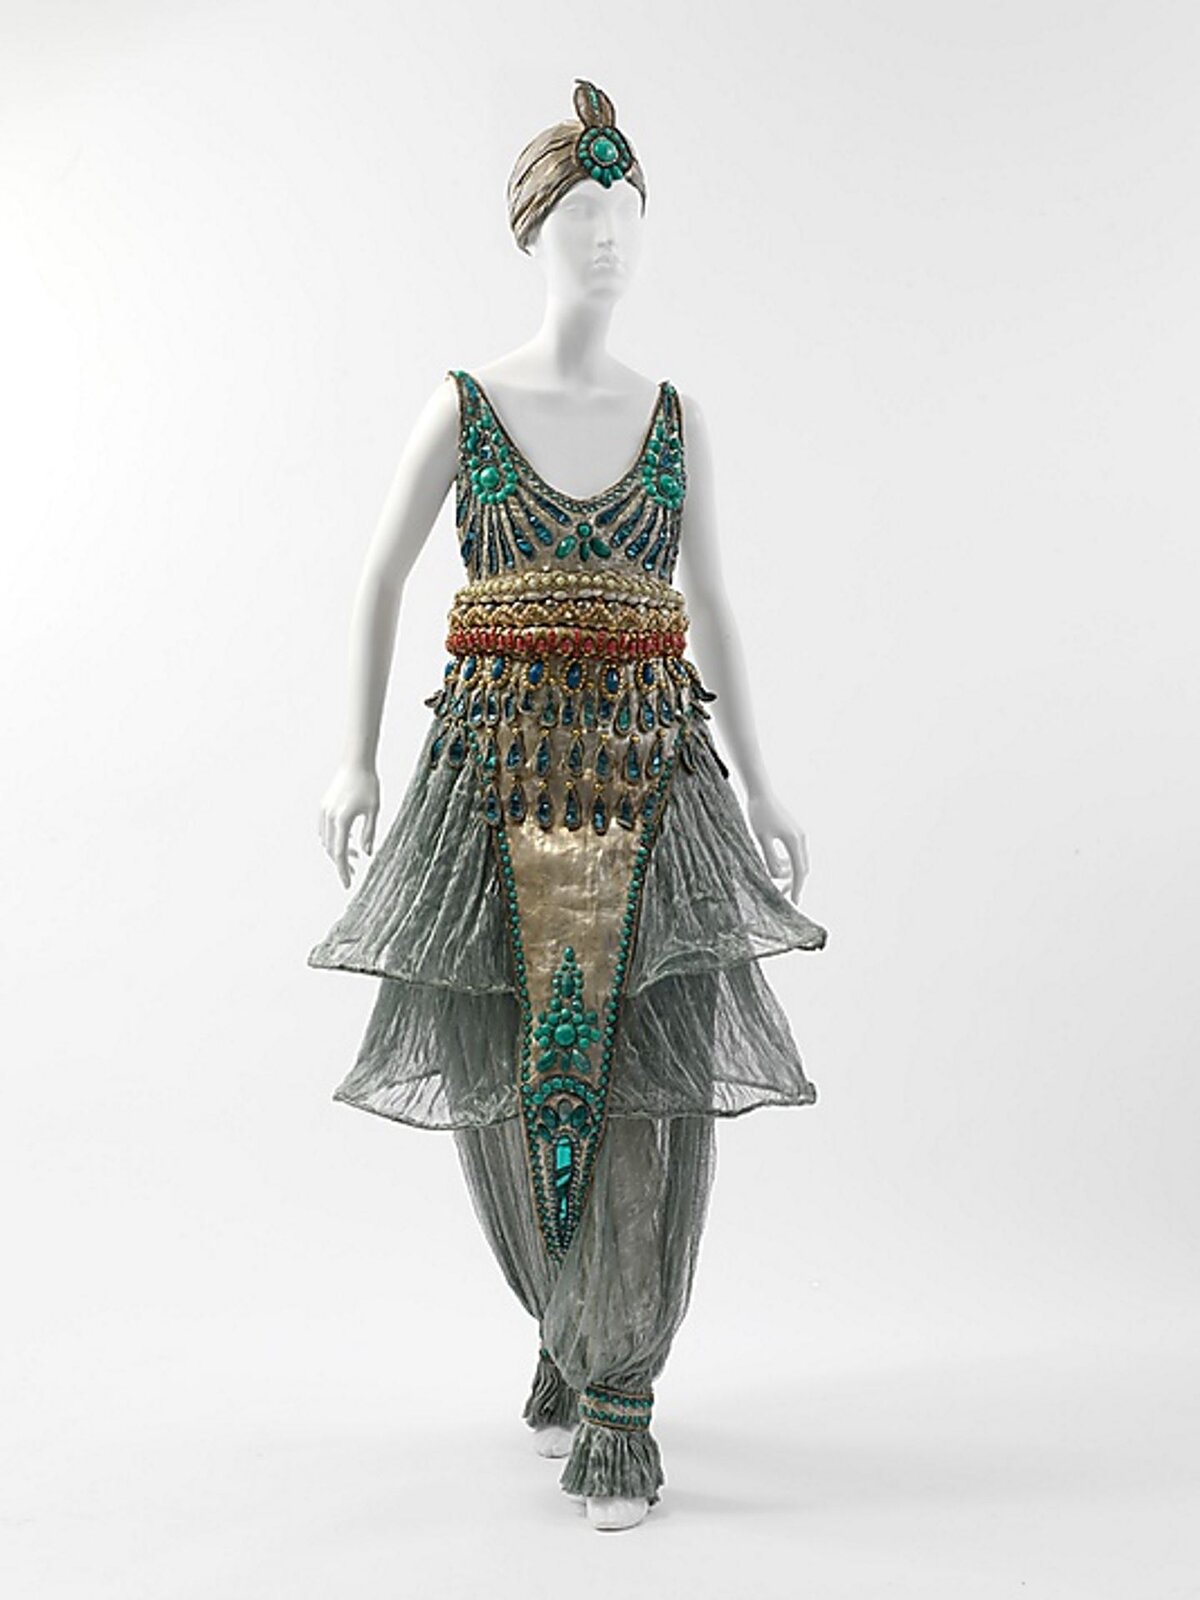 Fotografia przedstawia strój wykonanay przez Paula Poireta, który był wiodącym francuskim projektantem mody, mistrzem mody w pierwszych dwóch dekadach XX wieku.